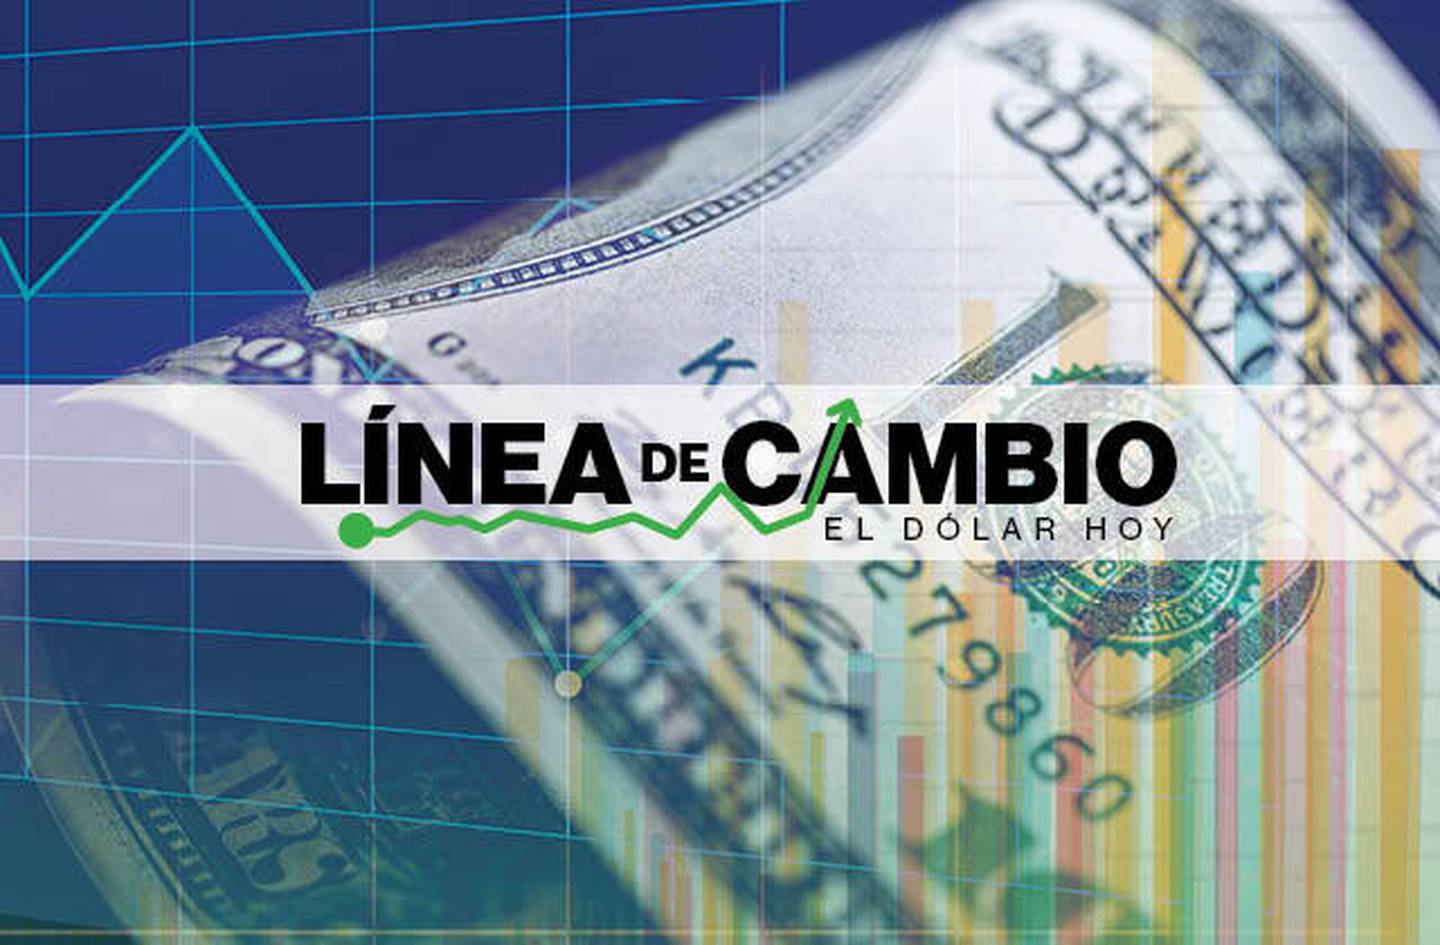 Dólar hoy: Peso de Colombia lidera ganancias de LatAm en jornada de desempeño mixto.